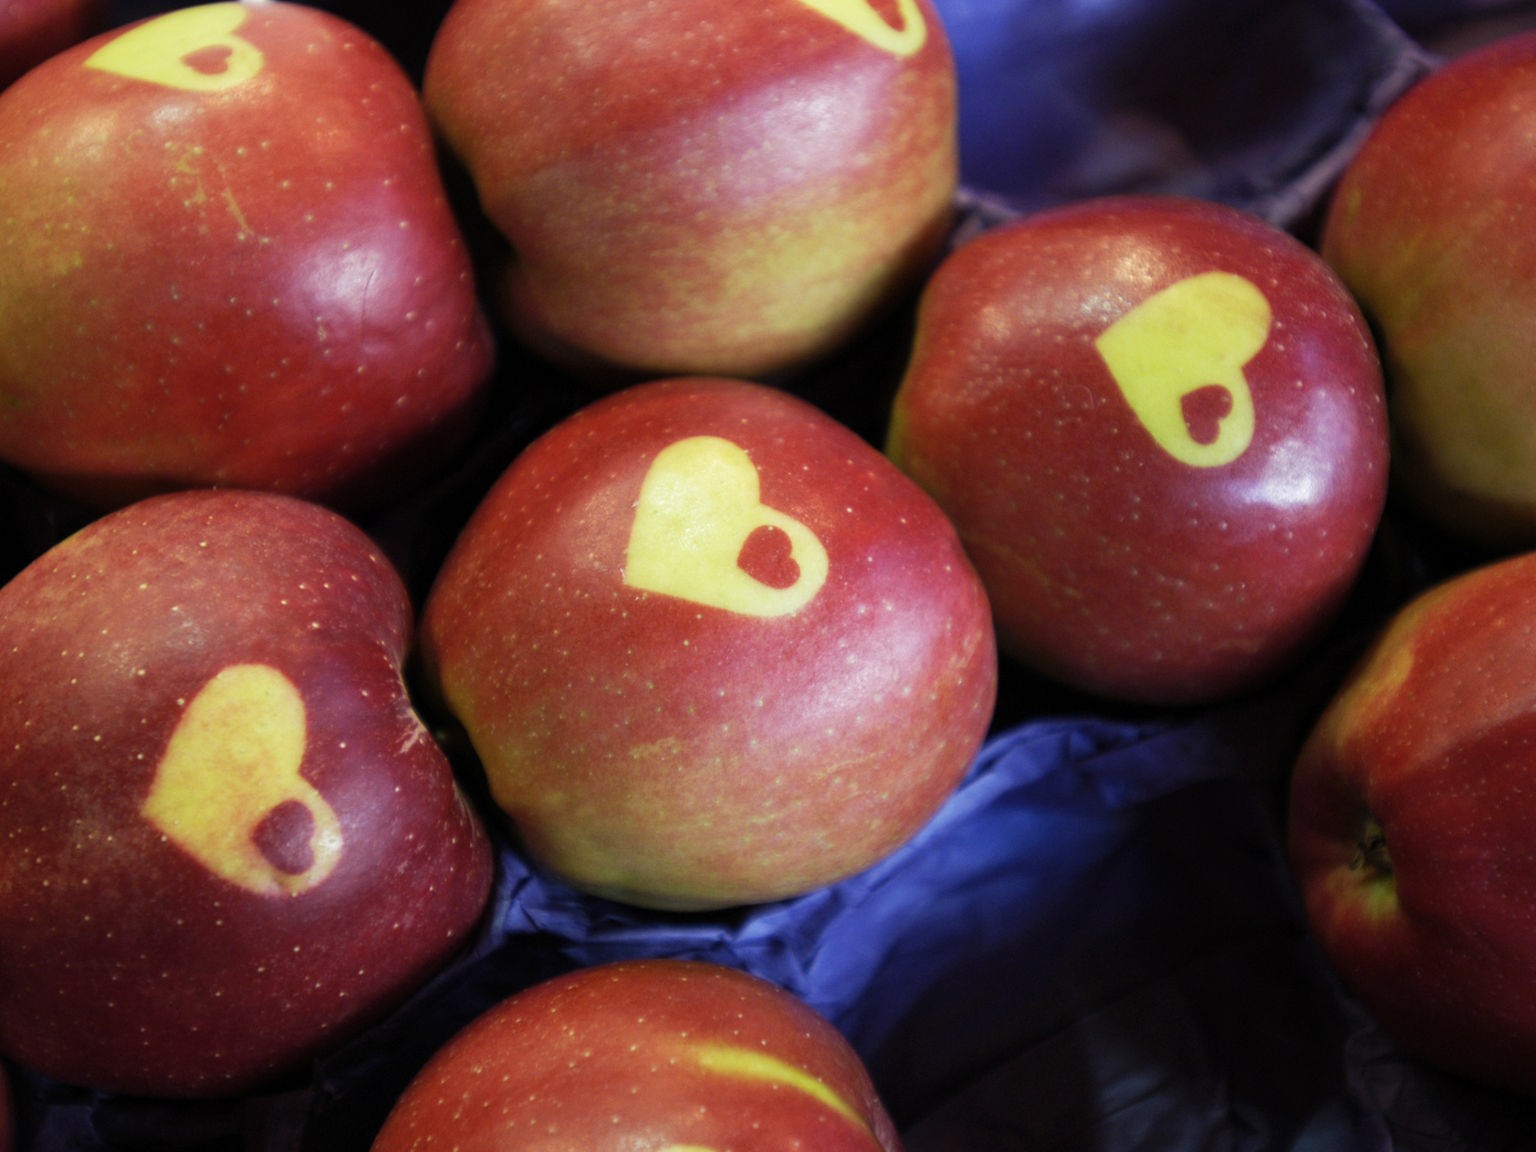 der - Gesellschaft wird Warum Wissen - Lebensmittel Planet Äpfel: - rot? Apfel